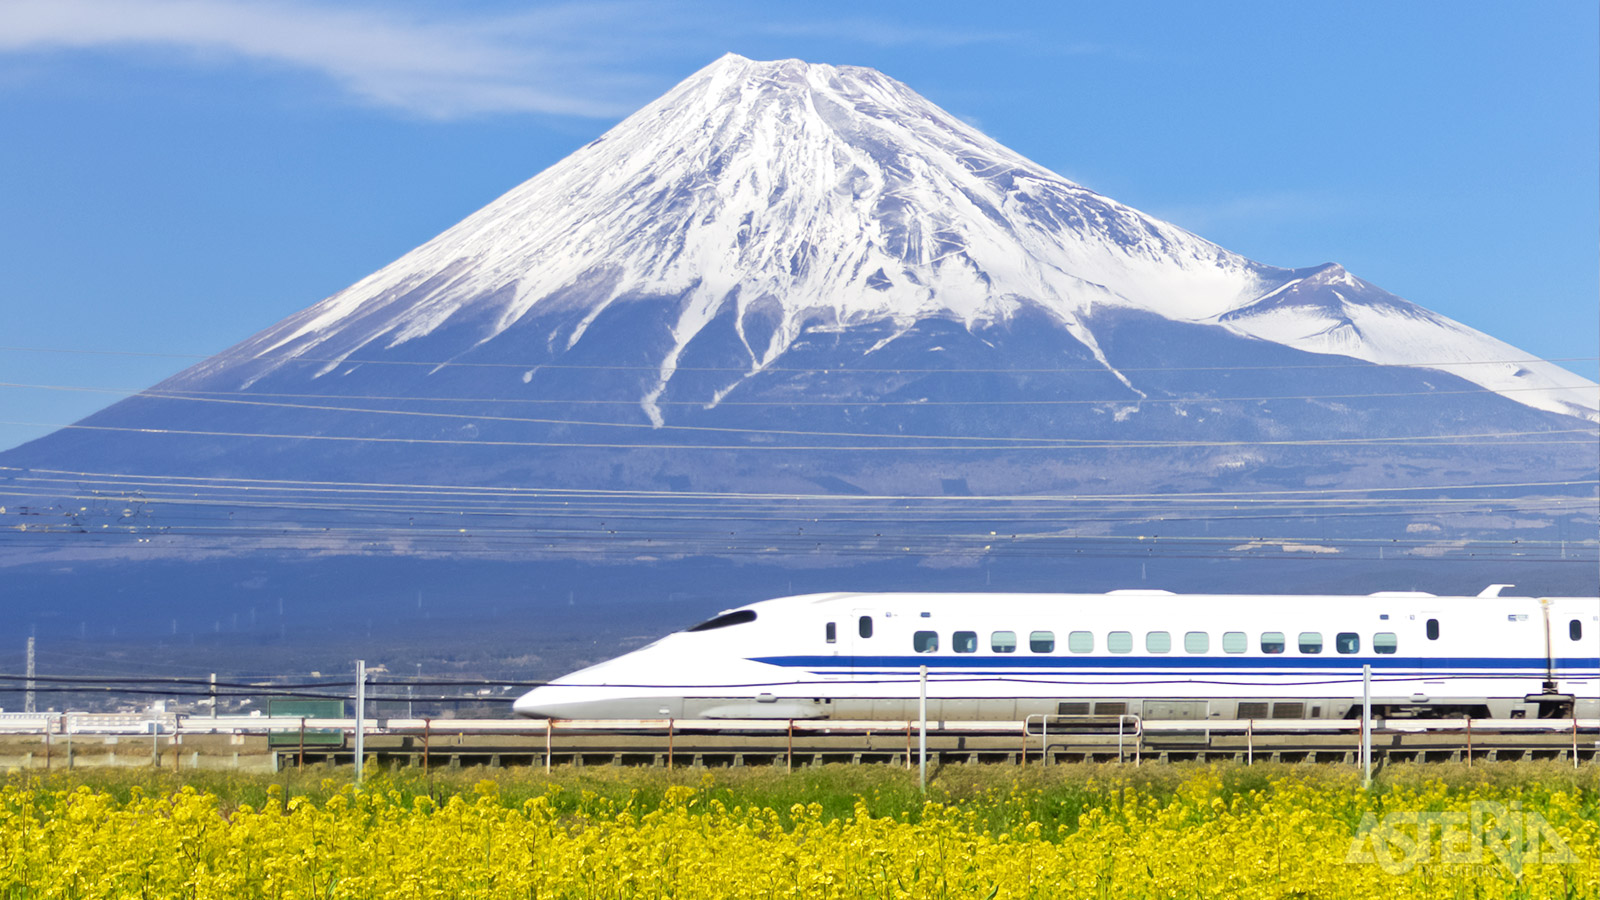 Met de Shinkansen-kogeltrein reis je snel van Tokio naar Kyoto